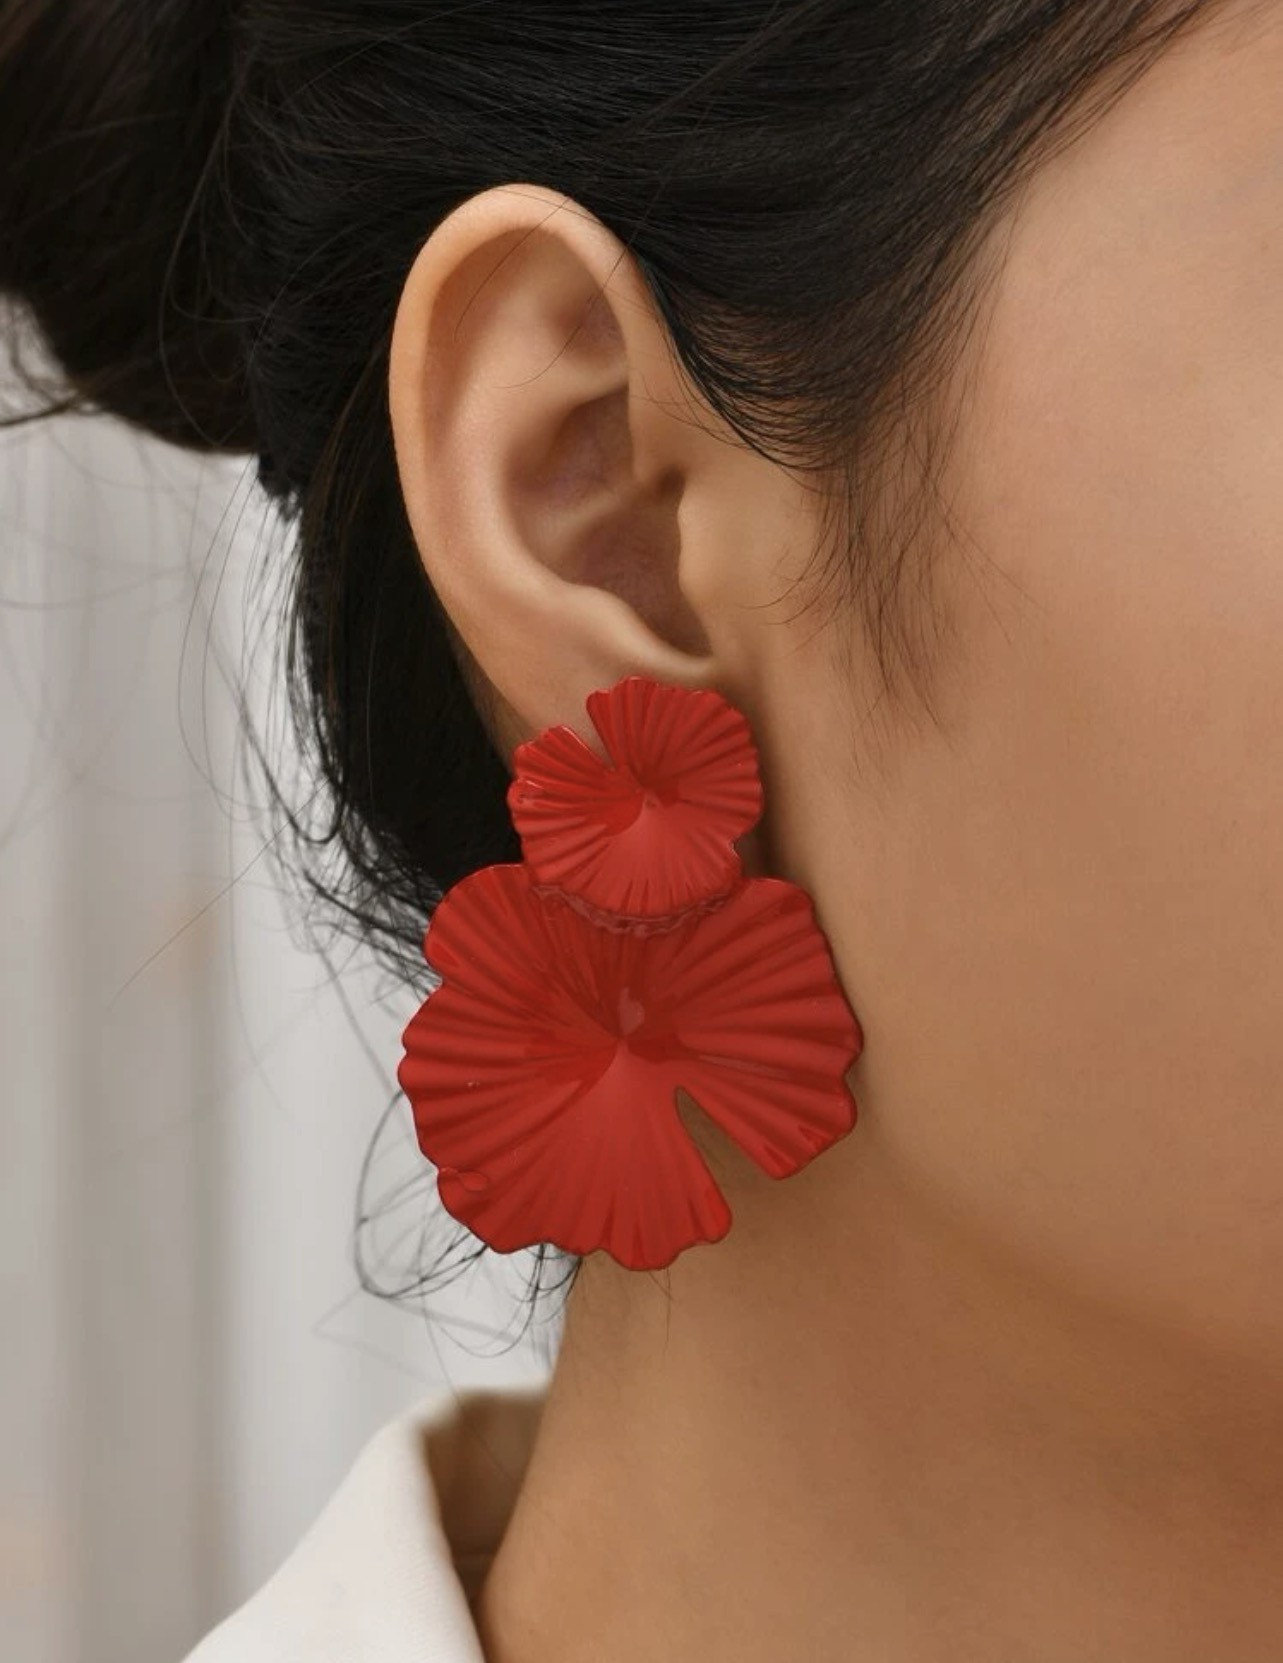 Buy Beautiful Red Long Earrings Online  Odette